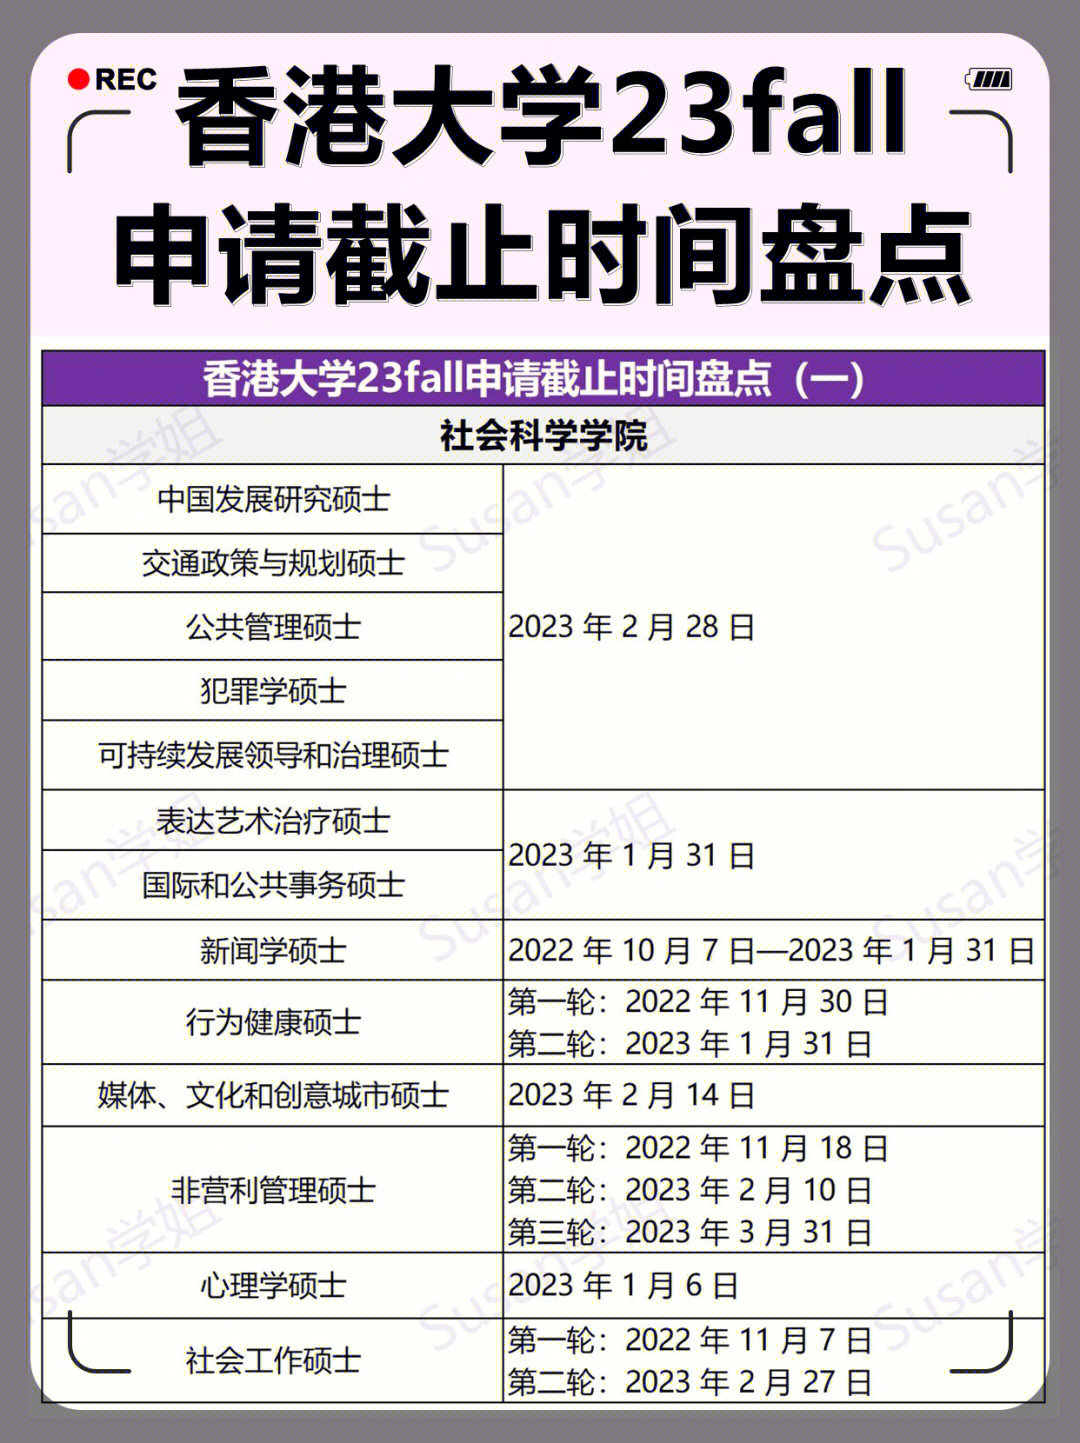 香港大学23fall申请截止时间盘点